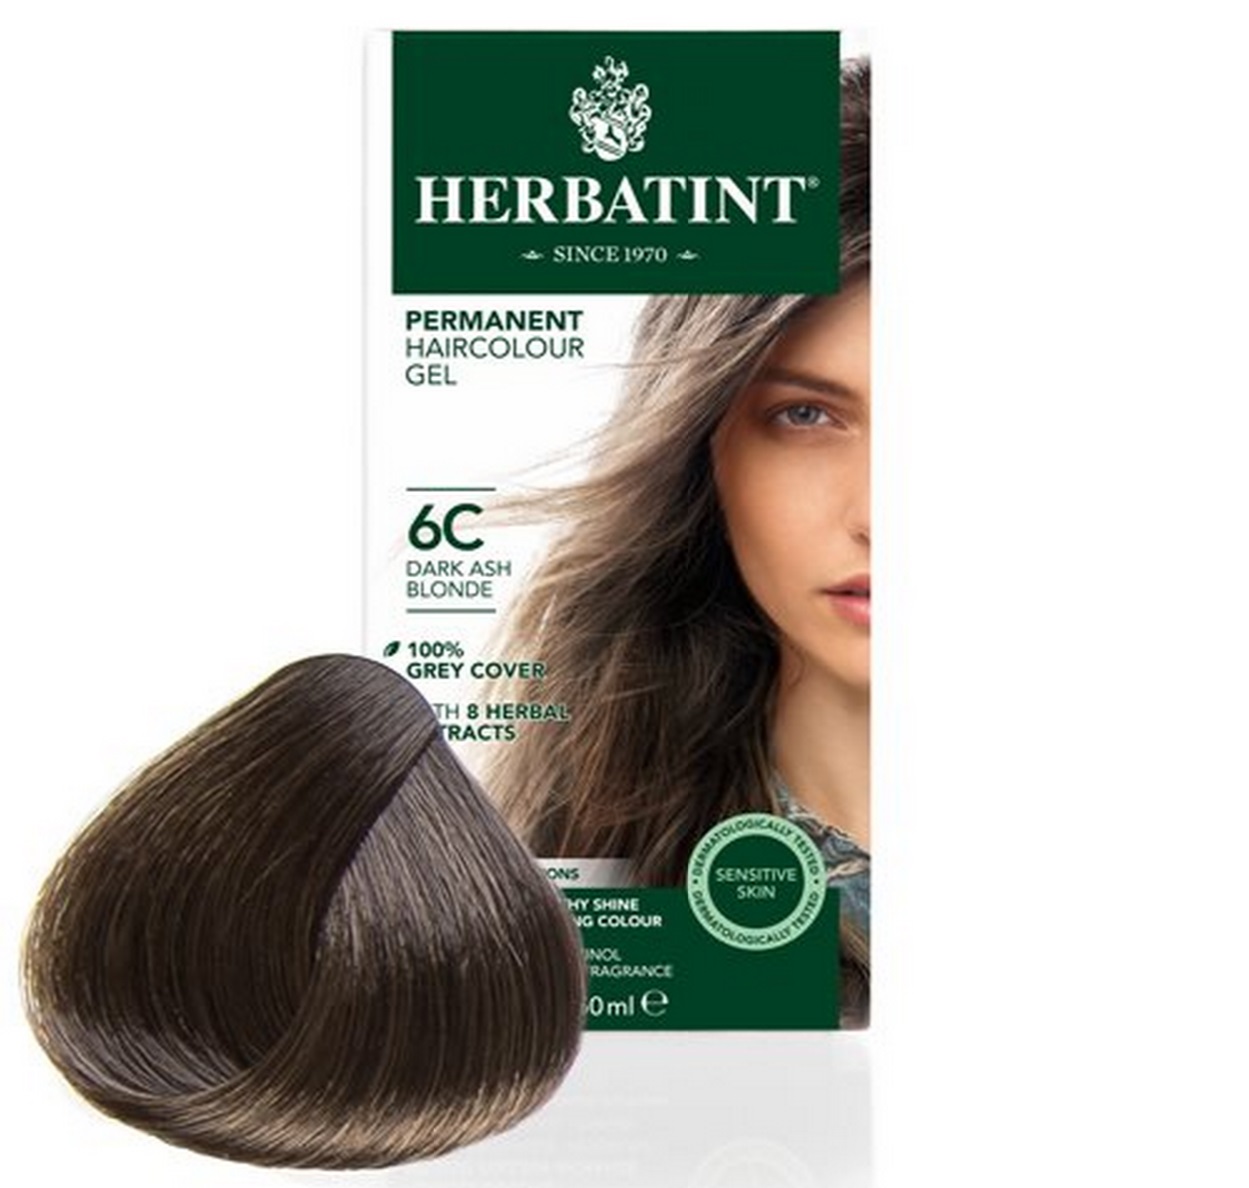 Billede af Herbatint 6C hårfarve Dark Ash Blond, 150ml. hos Ren-velvaereshop.dk